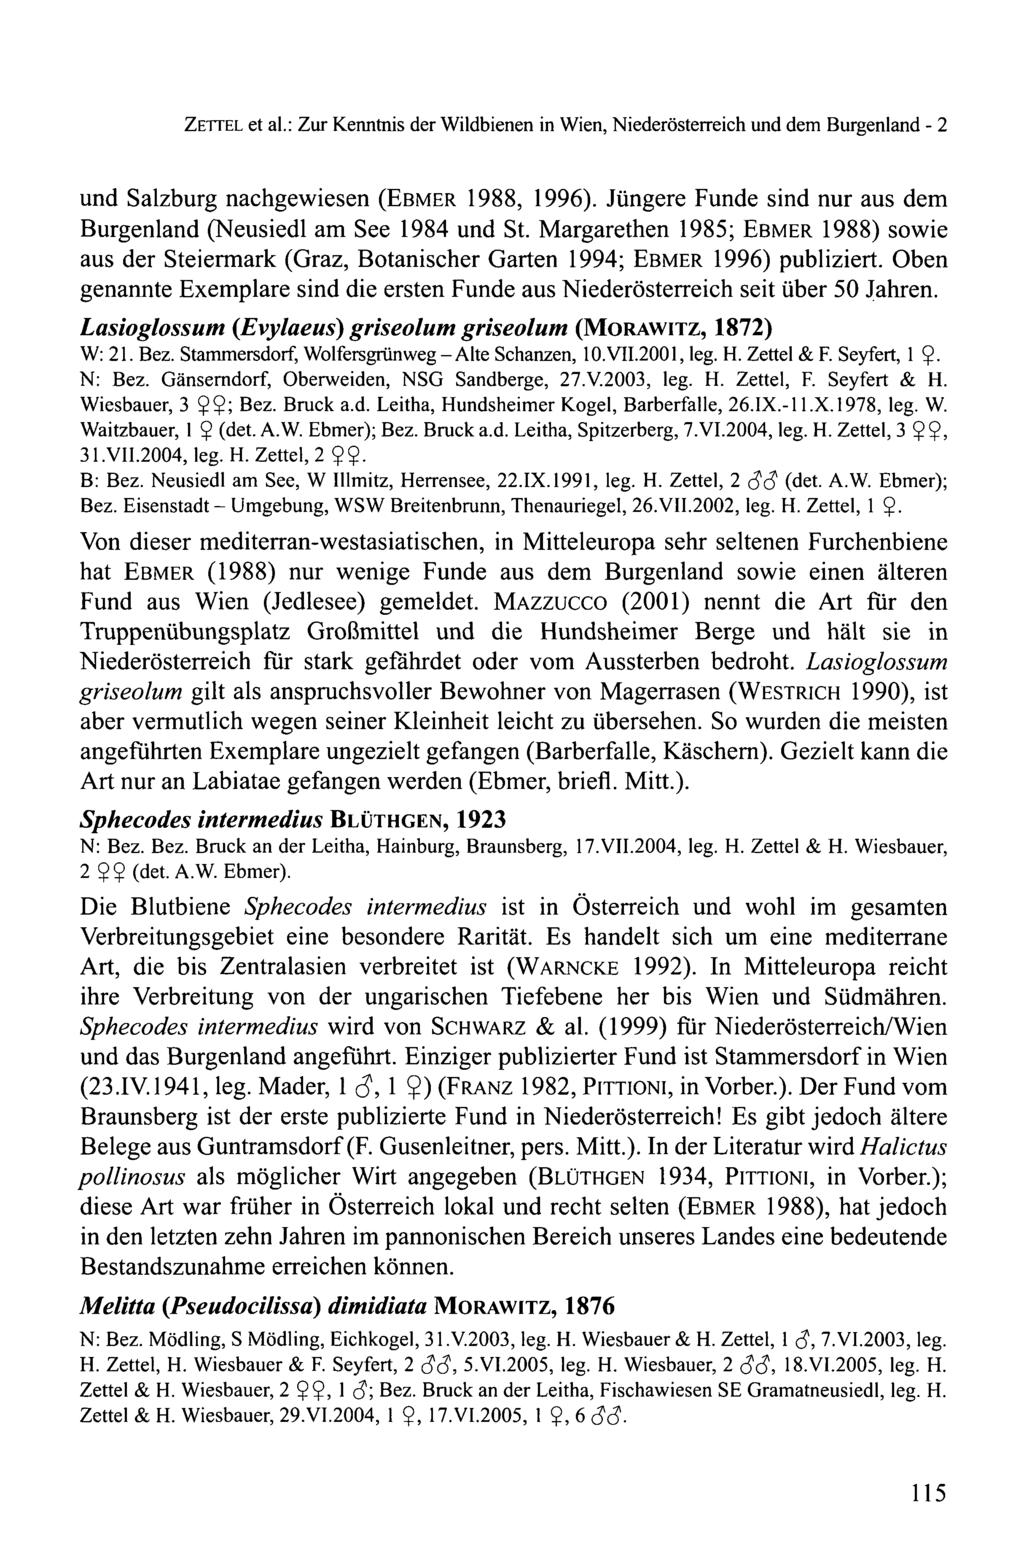 ZETTEL et al.: Zur Kenntnis der Wildbienen in Wien, Niederösterreich und dem Burgenland - 2 und Salzburg nachgewiesen (EBMER 1988, 1996).